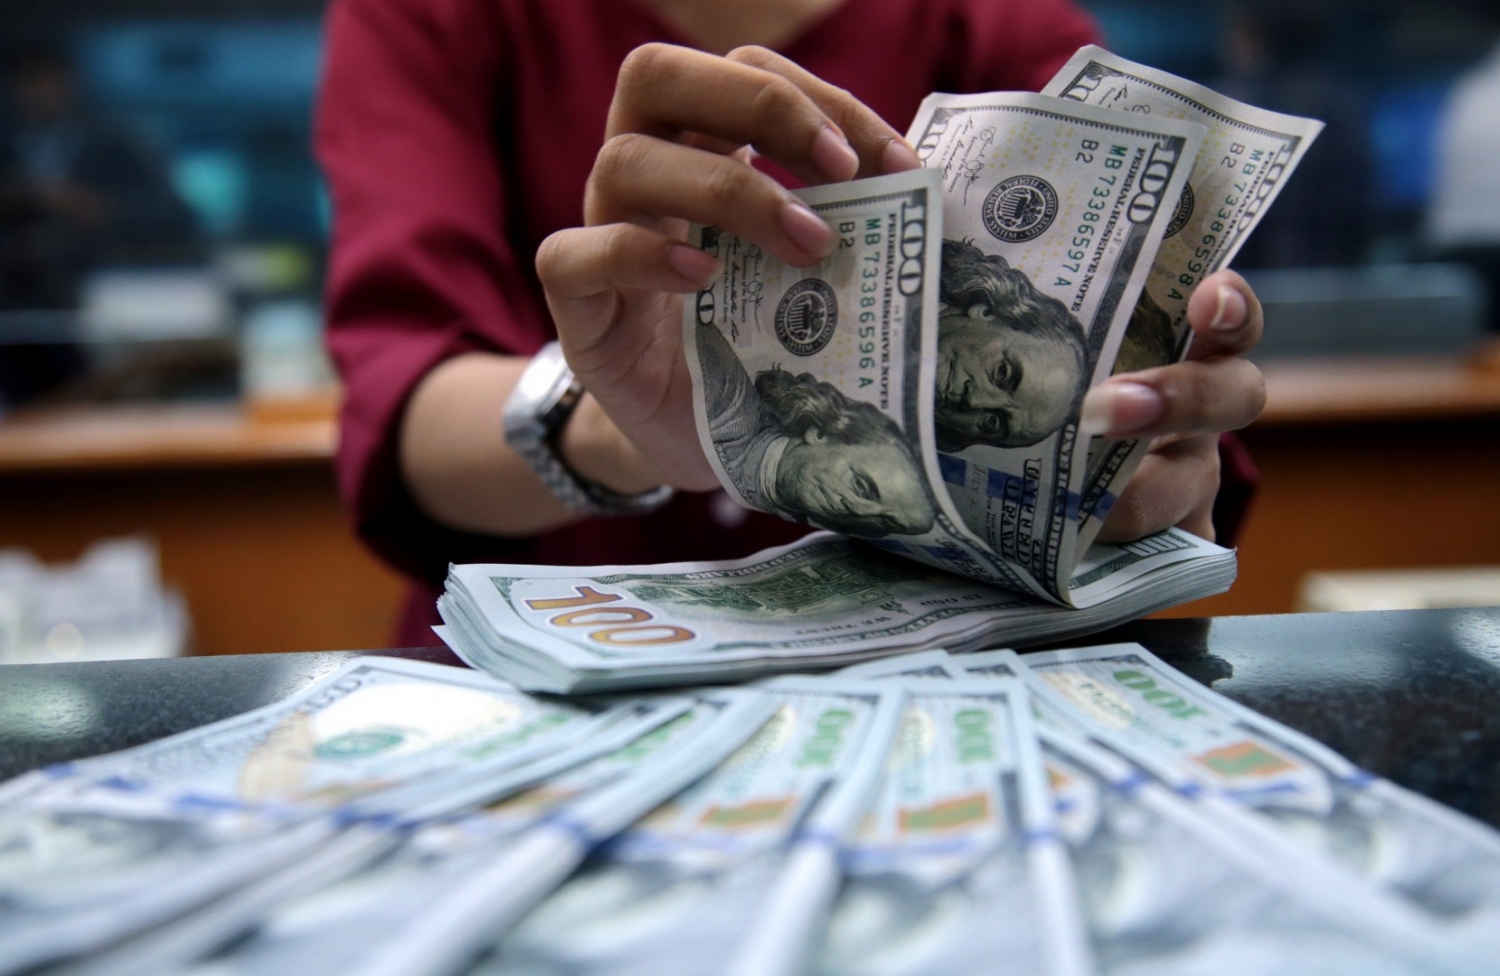 Tỷ giá ngoại tệ ngày 6/2/2022: Đồng USD đi ngang tại thị trường trong nước